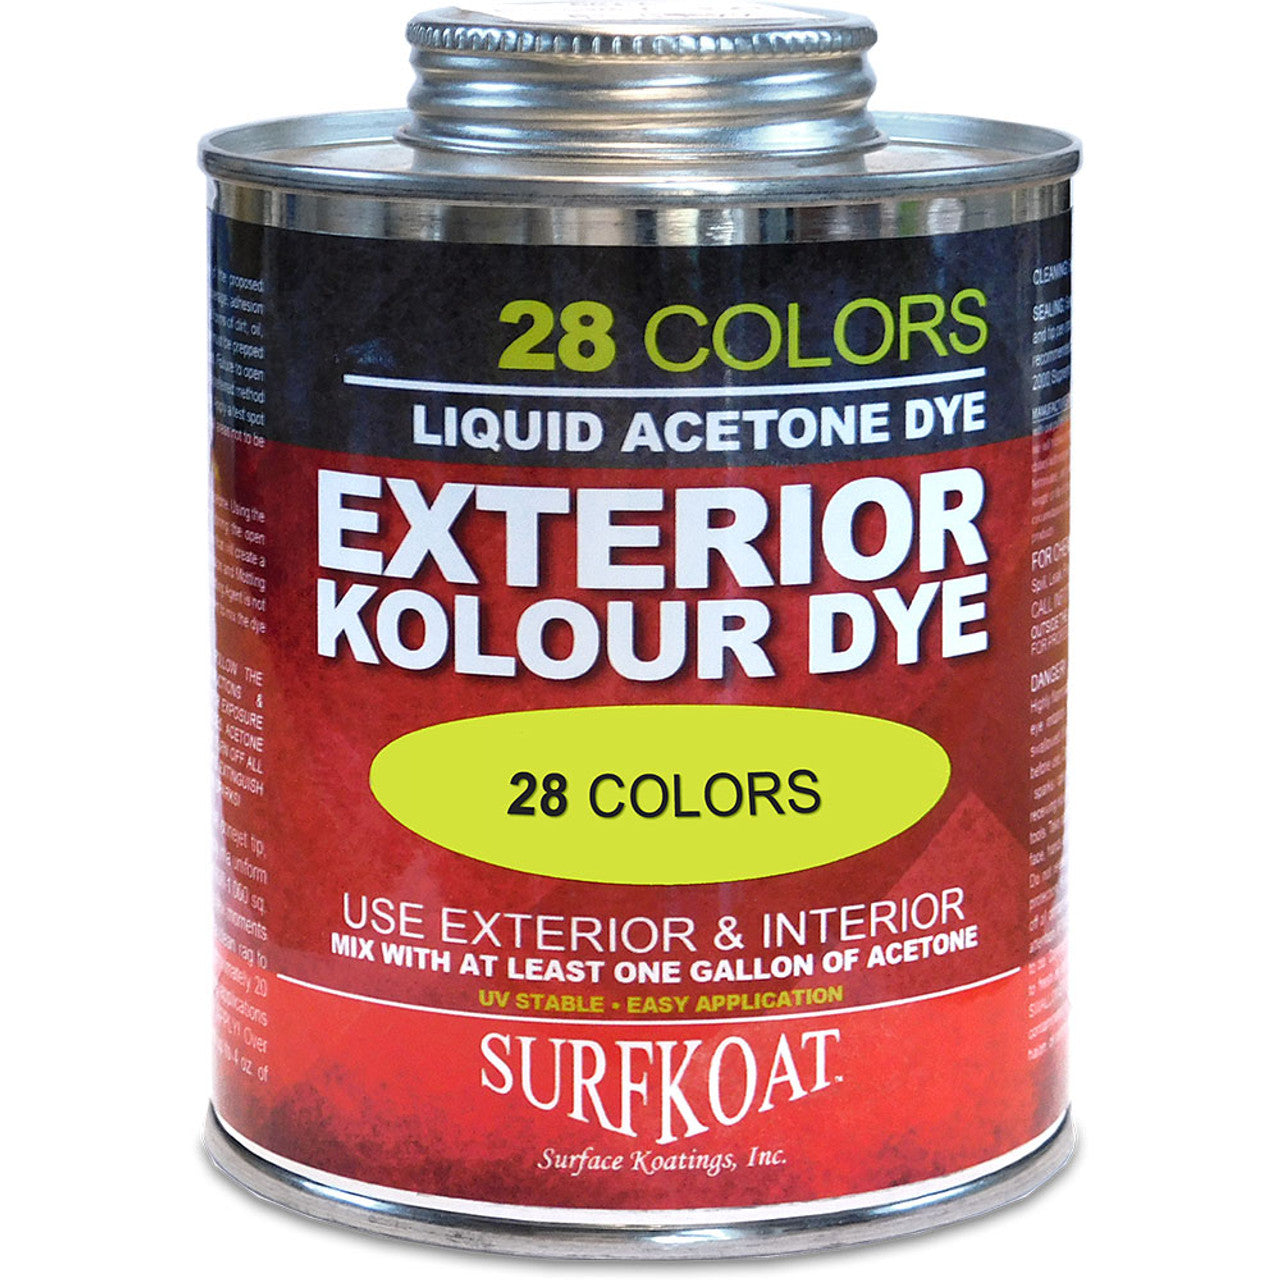 Kolour Dye (Chestnut) 5 Gallon Concentrate